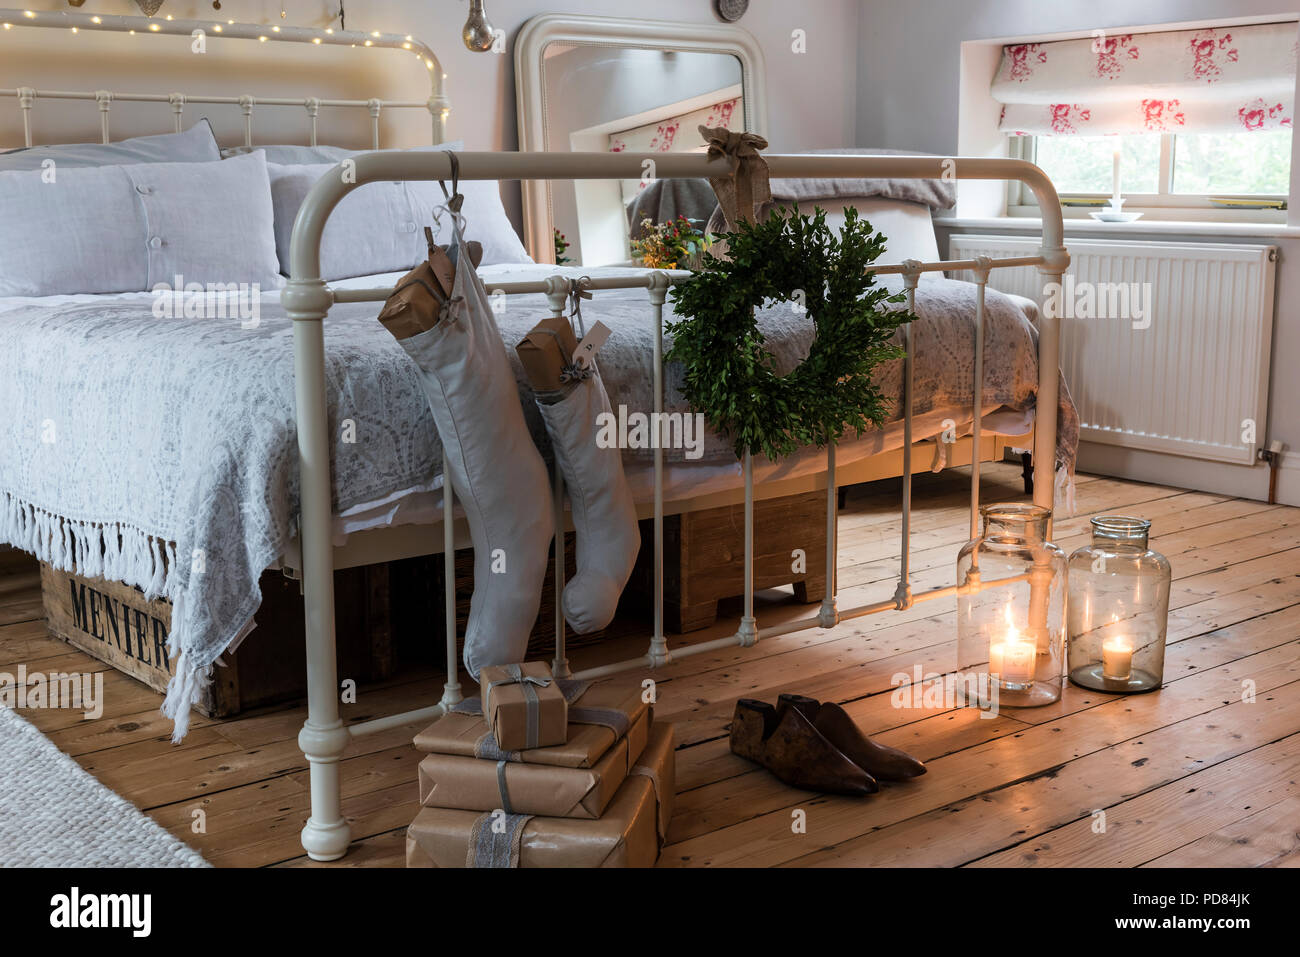 Regali impacchettati, calze e una corona di aggiungere un tocco festivo ad  una camera da letto in stile rustico. Il letto è da piuma & black con  Chocolat Menier scatole di legno